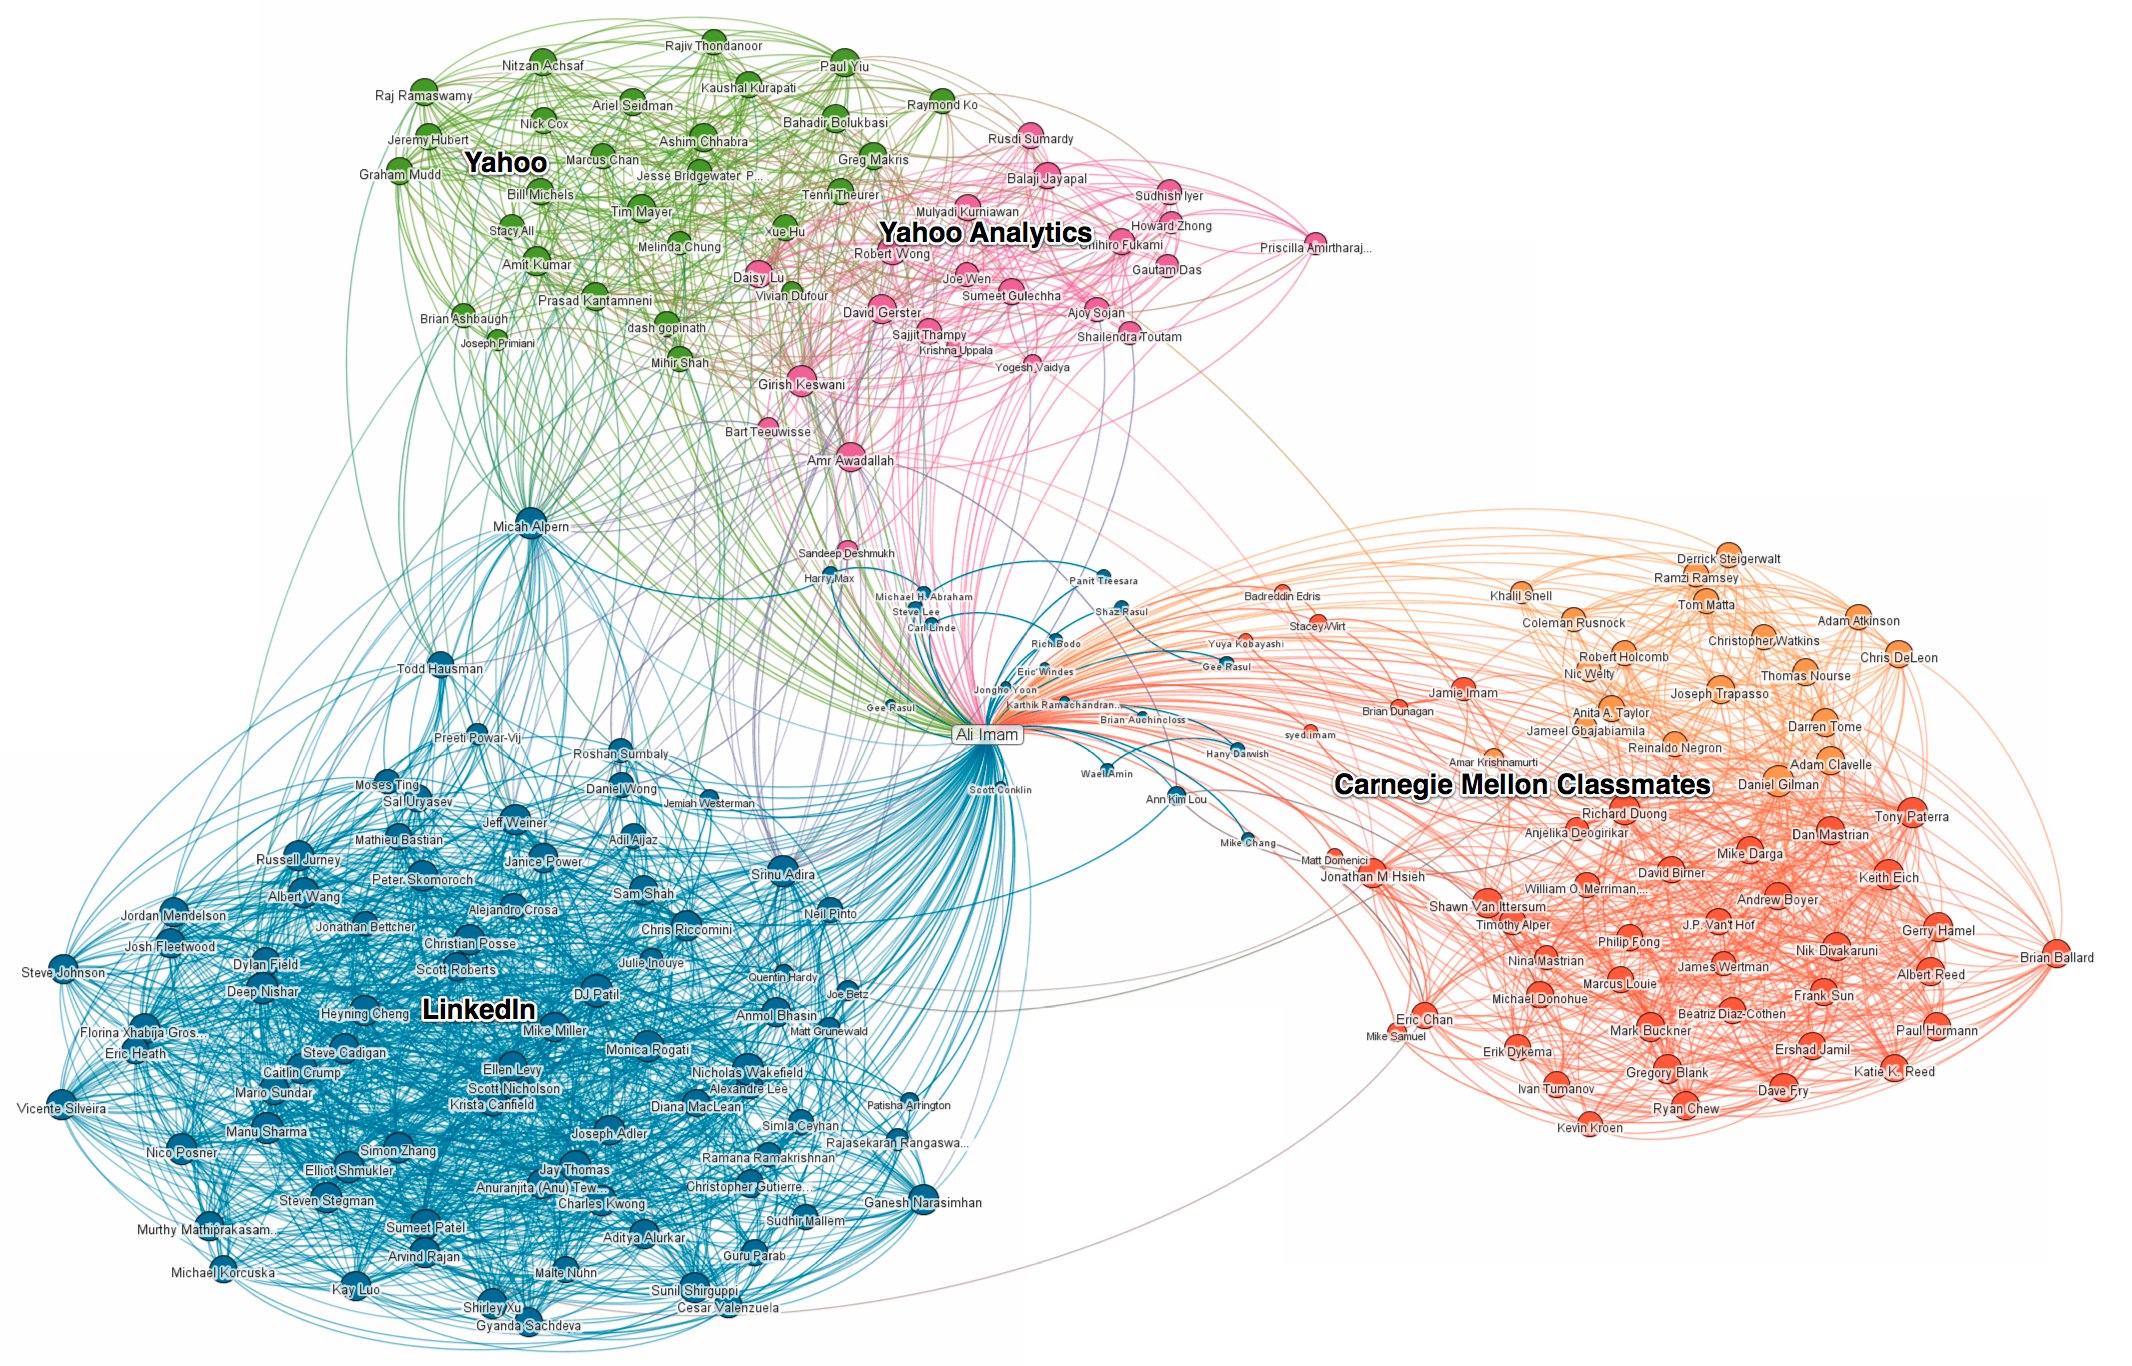 Réseaux sociaux : LinkedIn Maps permet aux utilisateurs de visualiser leurs relations professionnelles - InMaps de Imam Ali